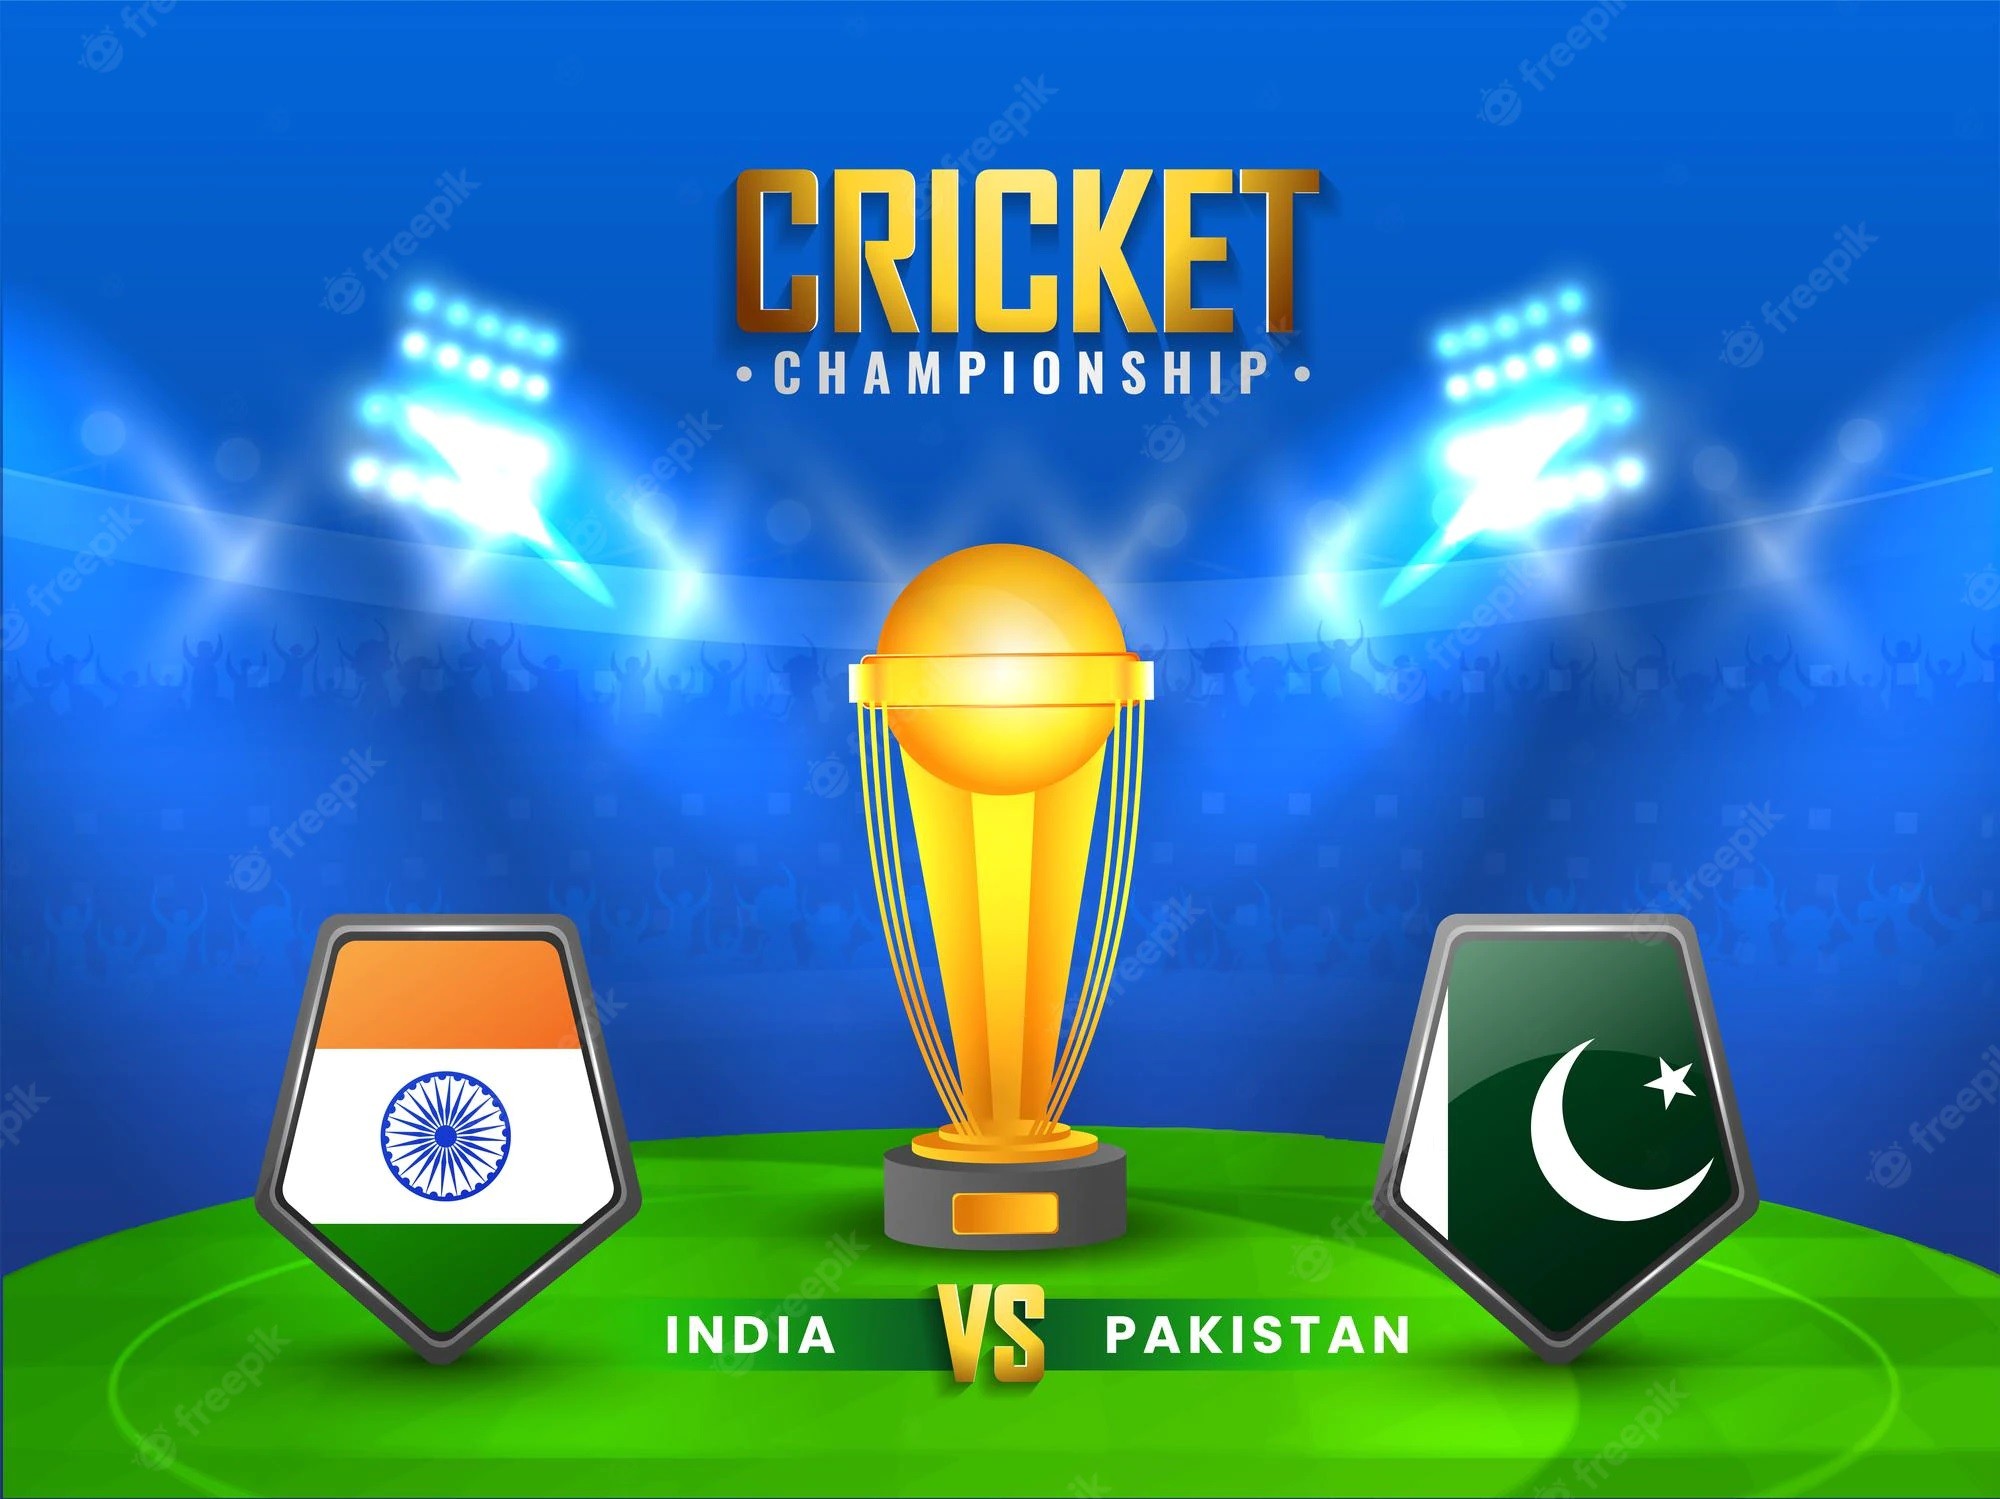 પાકિસ્તાન ભારત સામે ફલોપ : પાકિસ્તાનની ટીમને ચાર ઓવરમાં માત્ર 15 રન